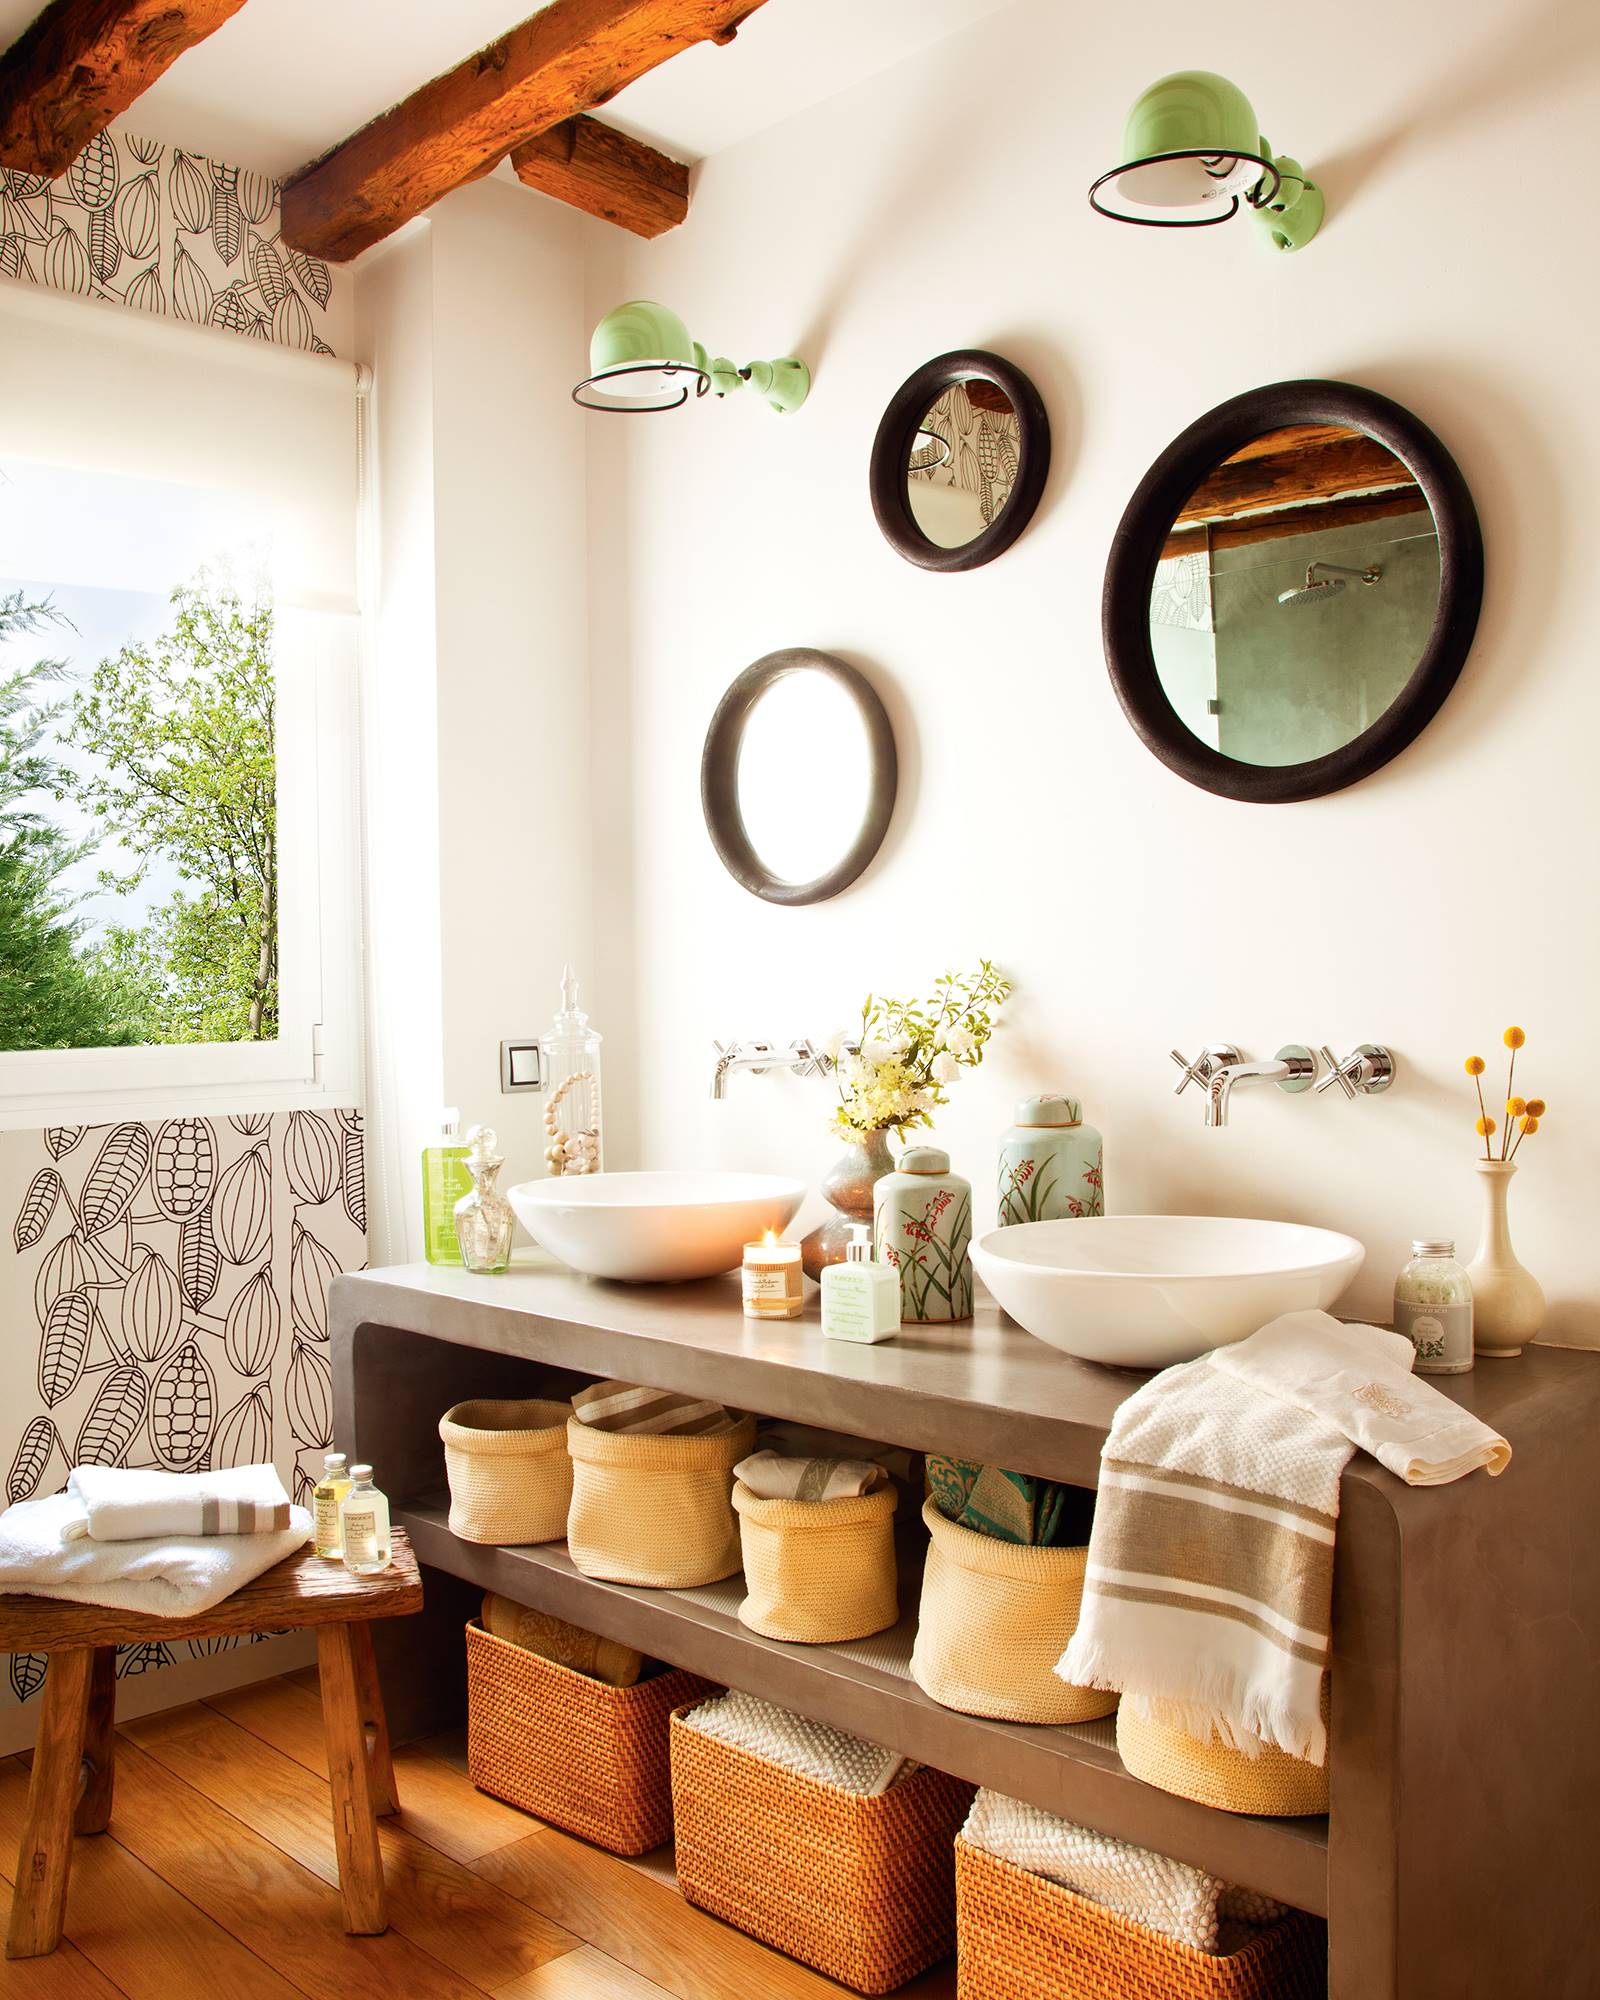 Baño con pared empapelada y tres espejos redondos de diferente tamaño.